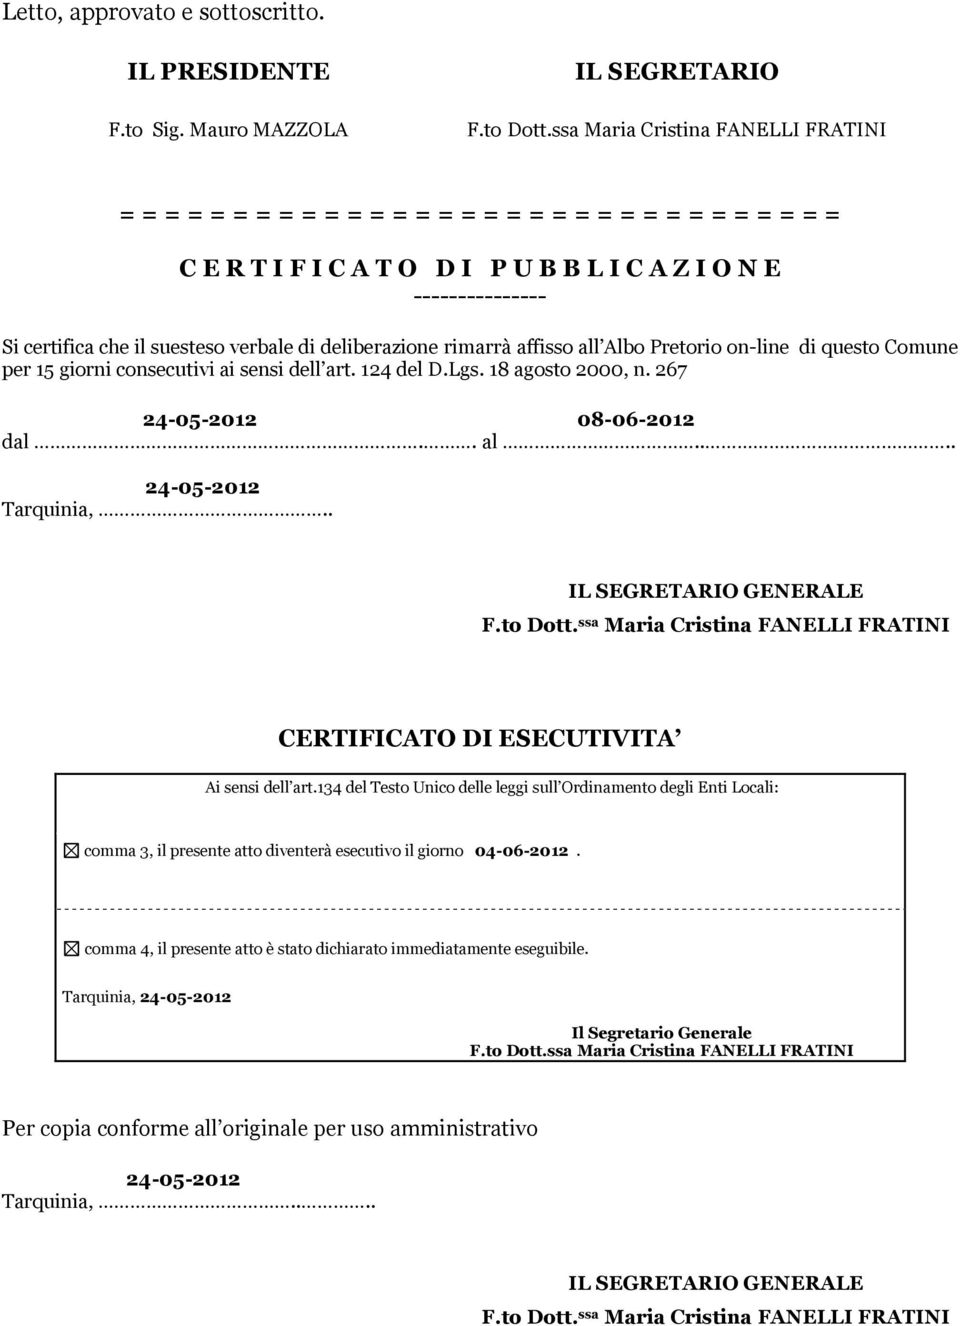 verbale di deliberazione rimarrà affisso all Albo Pretorio on-line di questo Comune per 15 giorni consecutivi ai sensi dell art. 124 del D.Lgs. 18 agosto 2000, n. 267 24-05-2012 08-06-2012 dal.. al.... 24-05-2012 Tarquinia,.